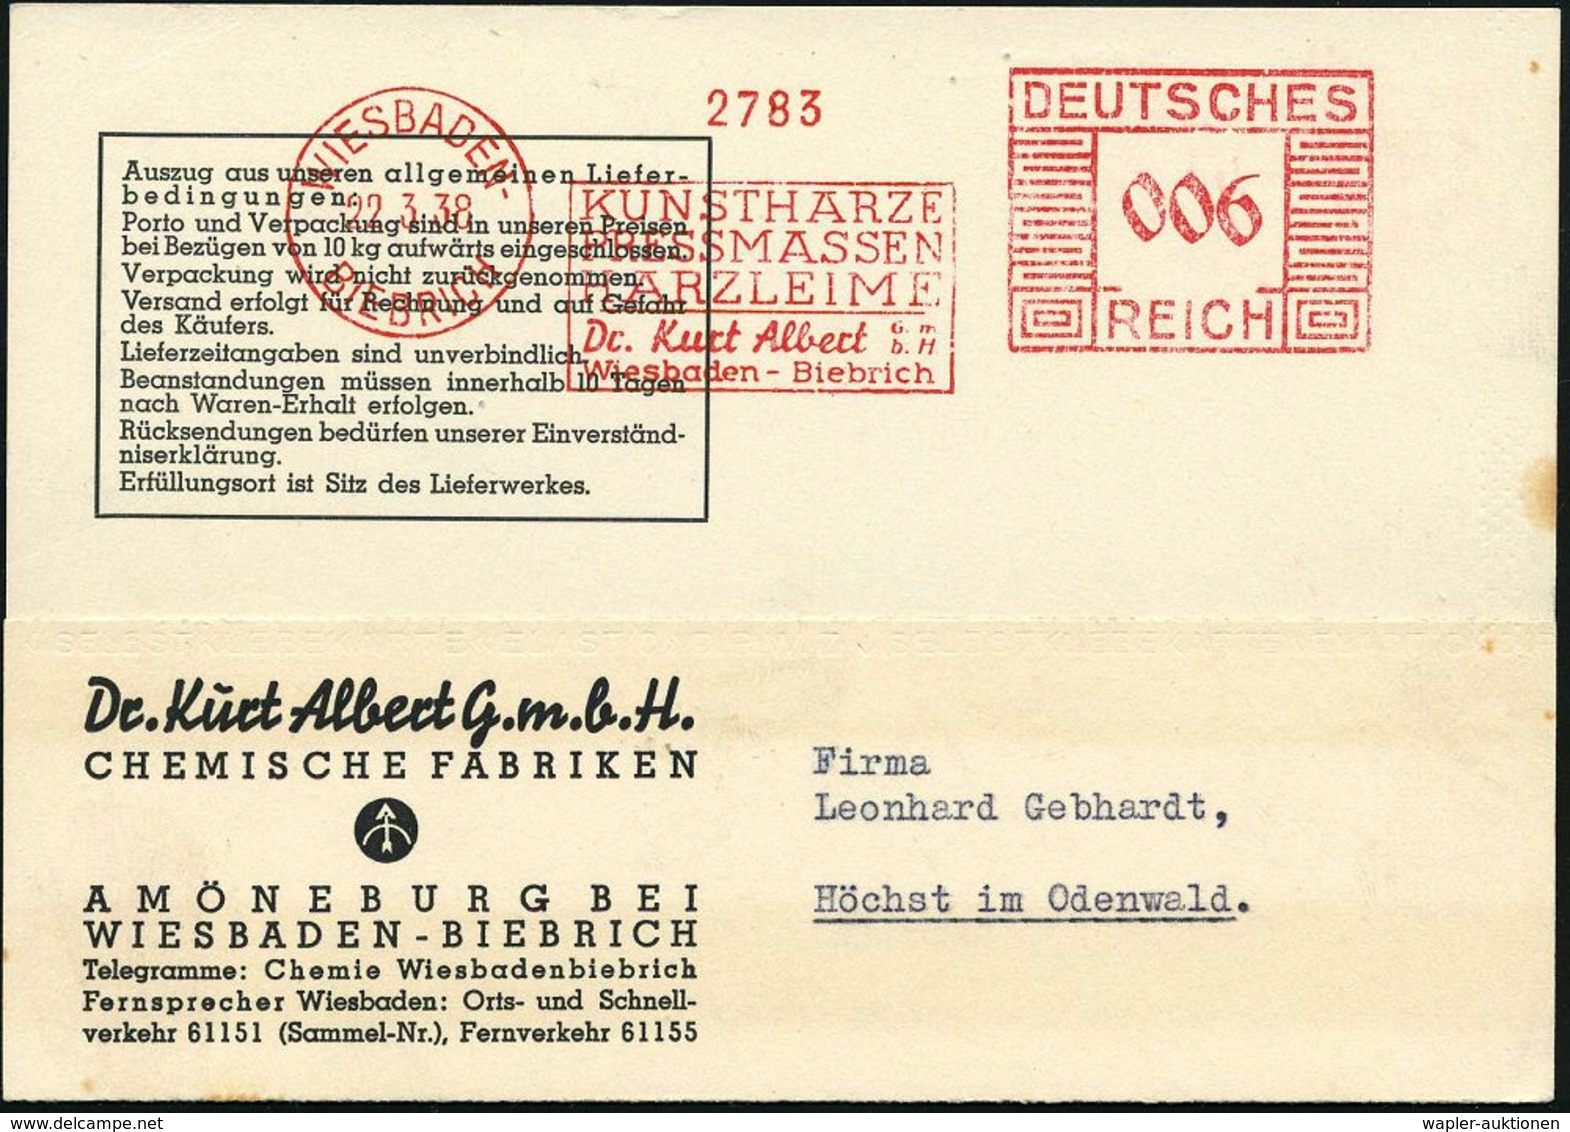 KUNSTSTOFFE & -FASERN / PLASTIK : WIESBADEN-/ BIEBRICH/ KUNSTHARZE/ PRESSMASSEN/ HARZLEIME/ Dr.Kurt Albert.. 1938 (22.3. - Chemistry